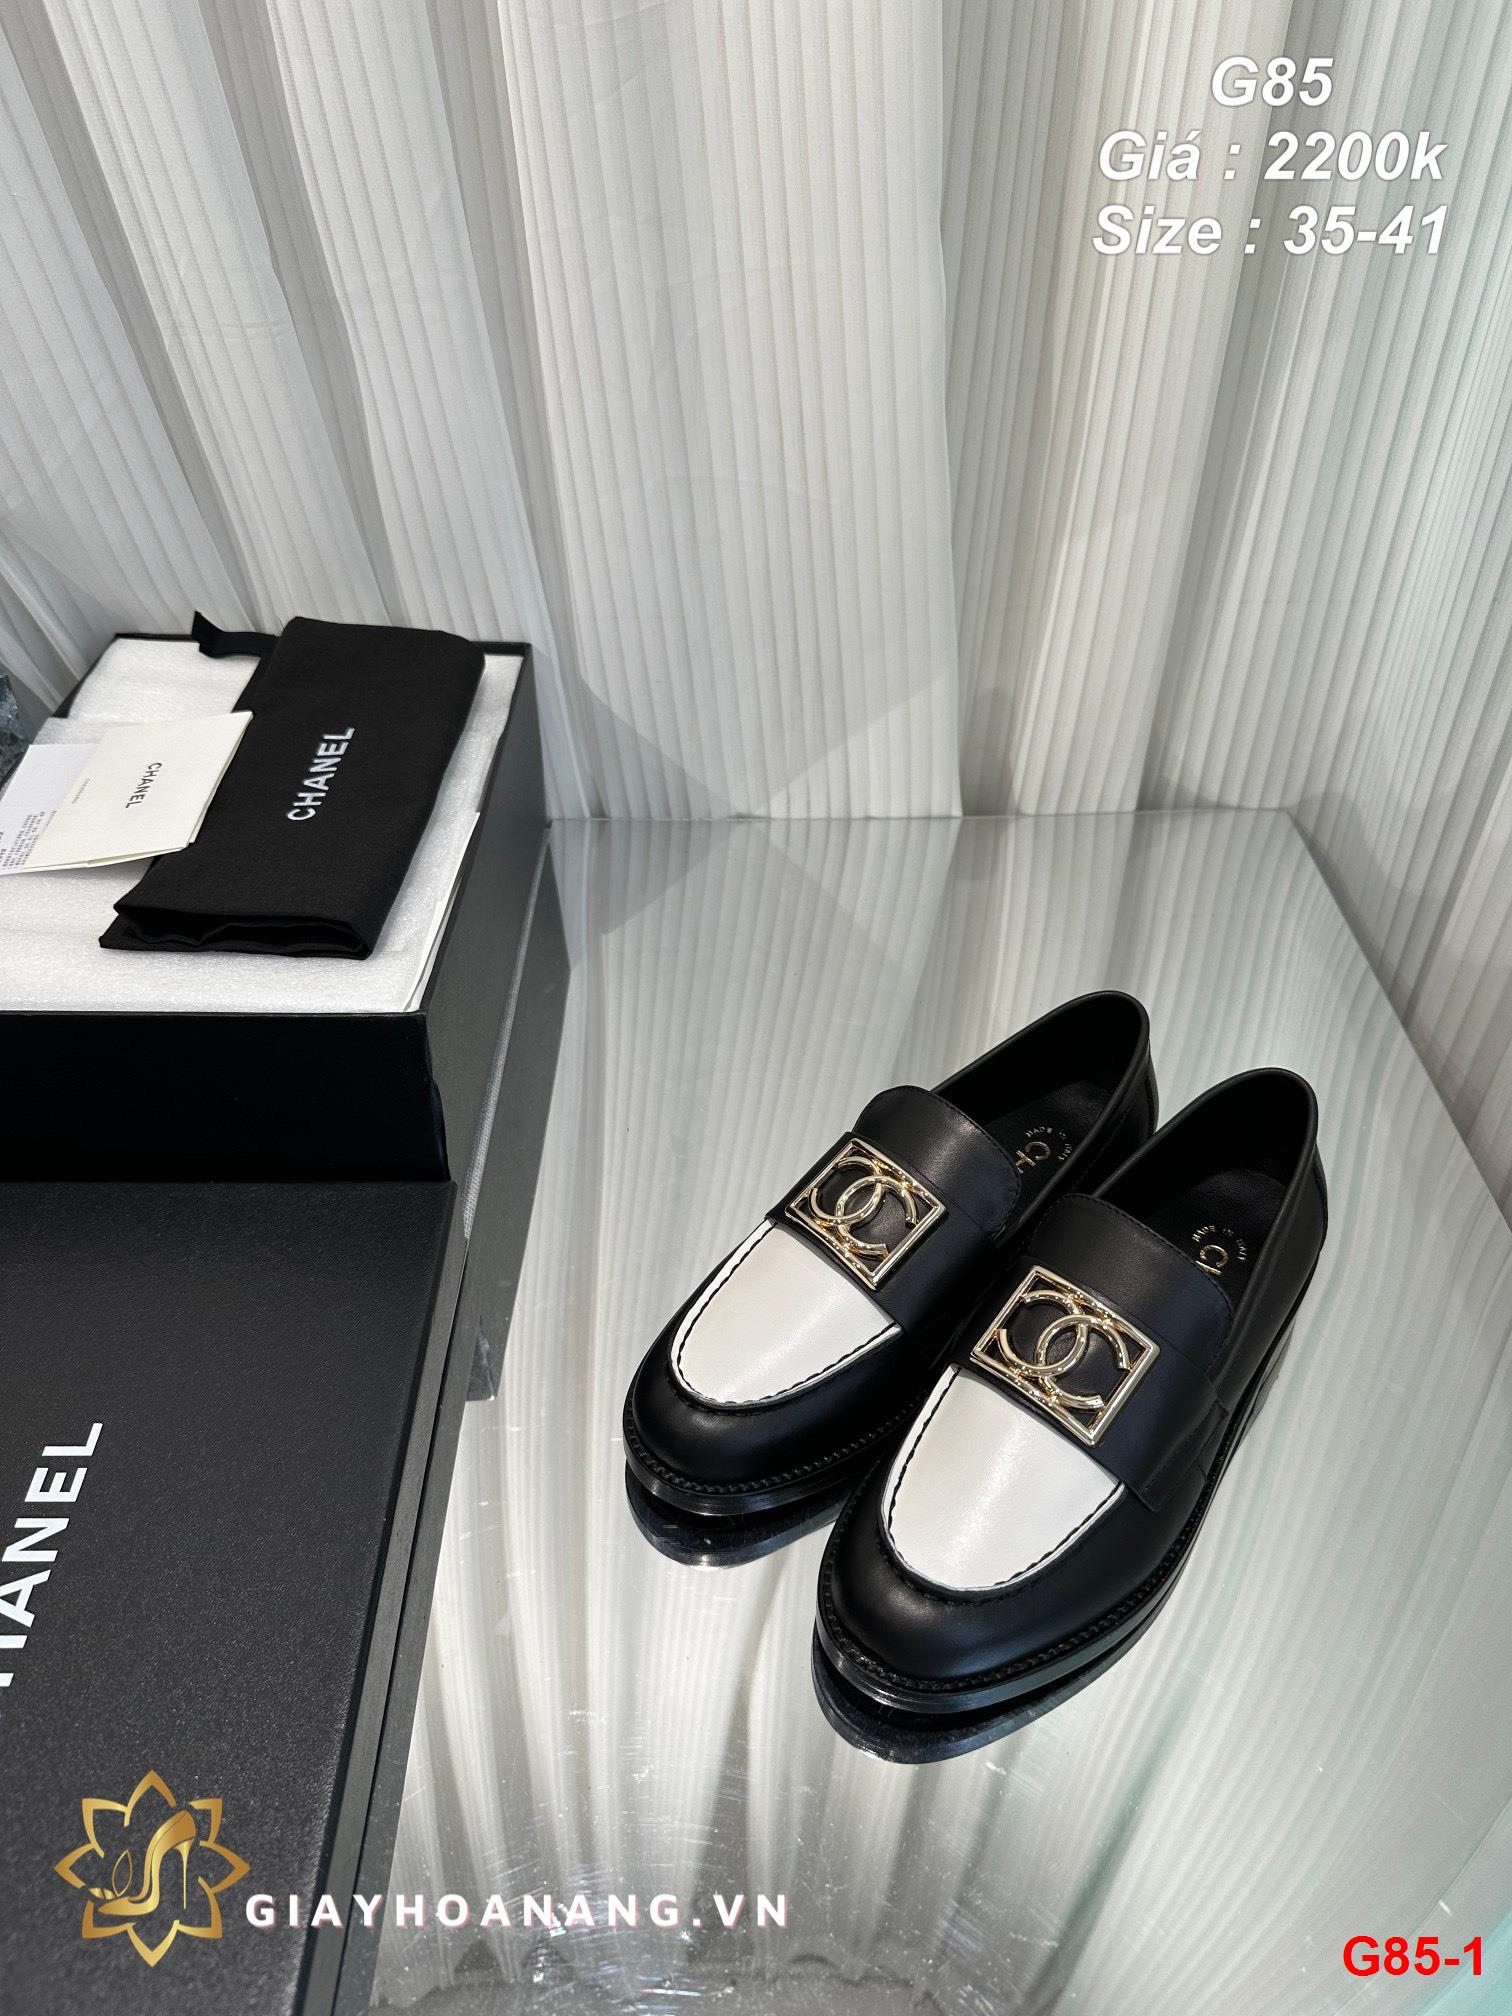 G85-1 Chanel giày lười siêu cấp